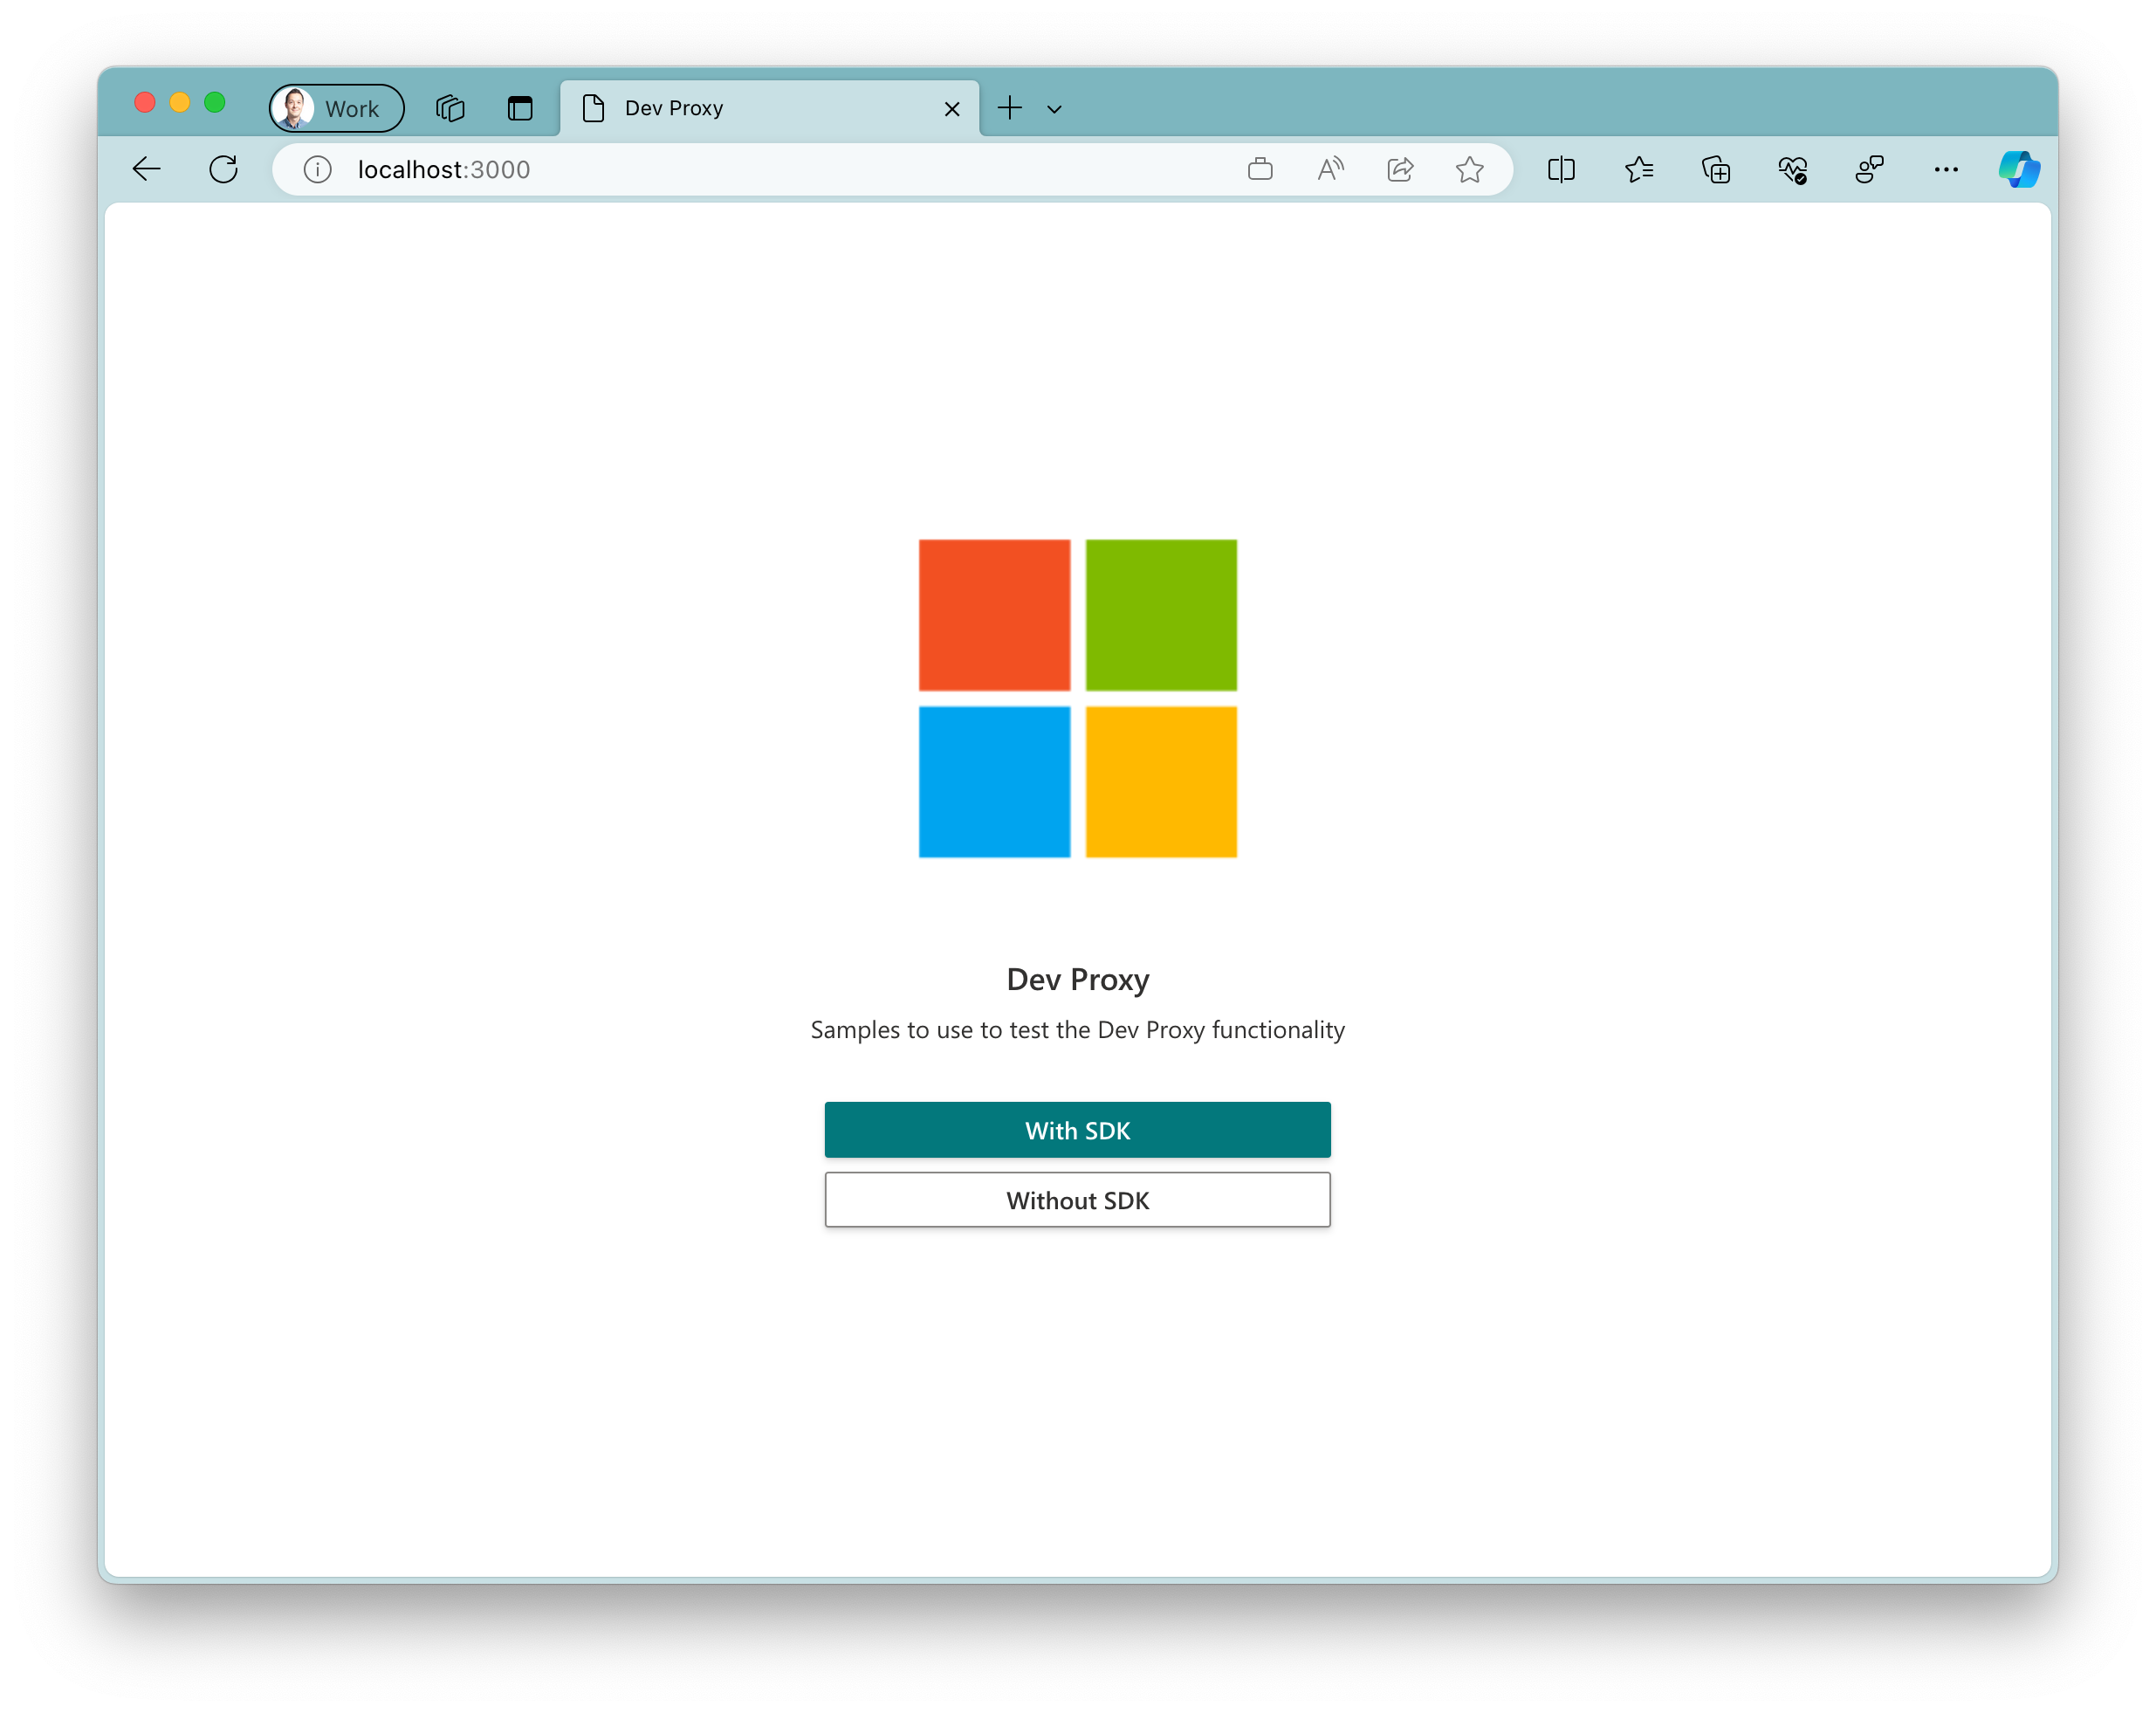 Snímek obrazovky s ukázkovou aplikací spuštěnou v prohlížeči Microsoft Edge v systému macOS Aplikace zobrazuje velké logo Microsoftu se dvěma tlačítky pod ním. Primární tlačítko s textem 